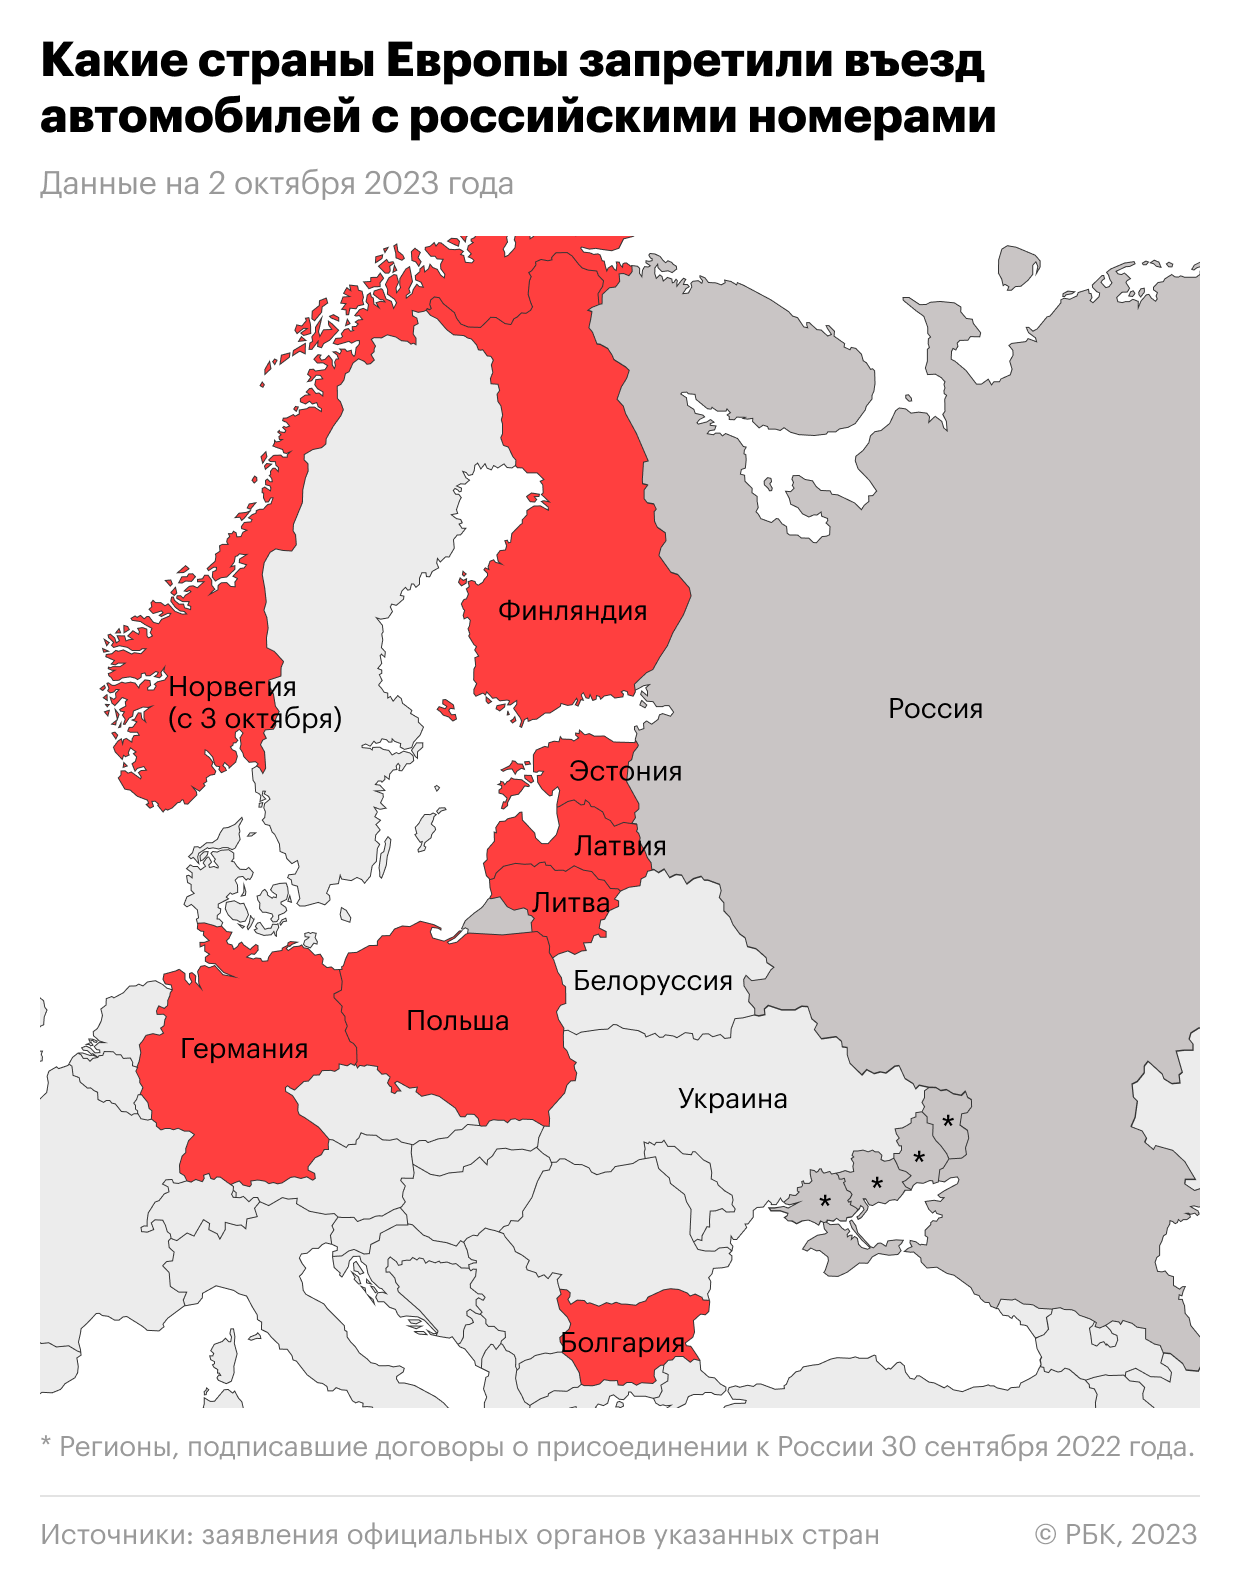 Какие страны Европы решили запретить въезд российским автомобилям